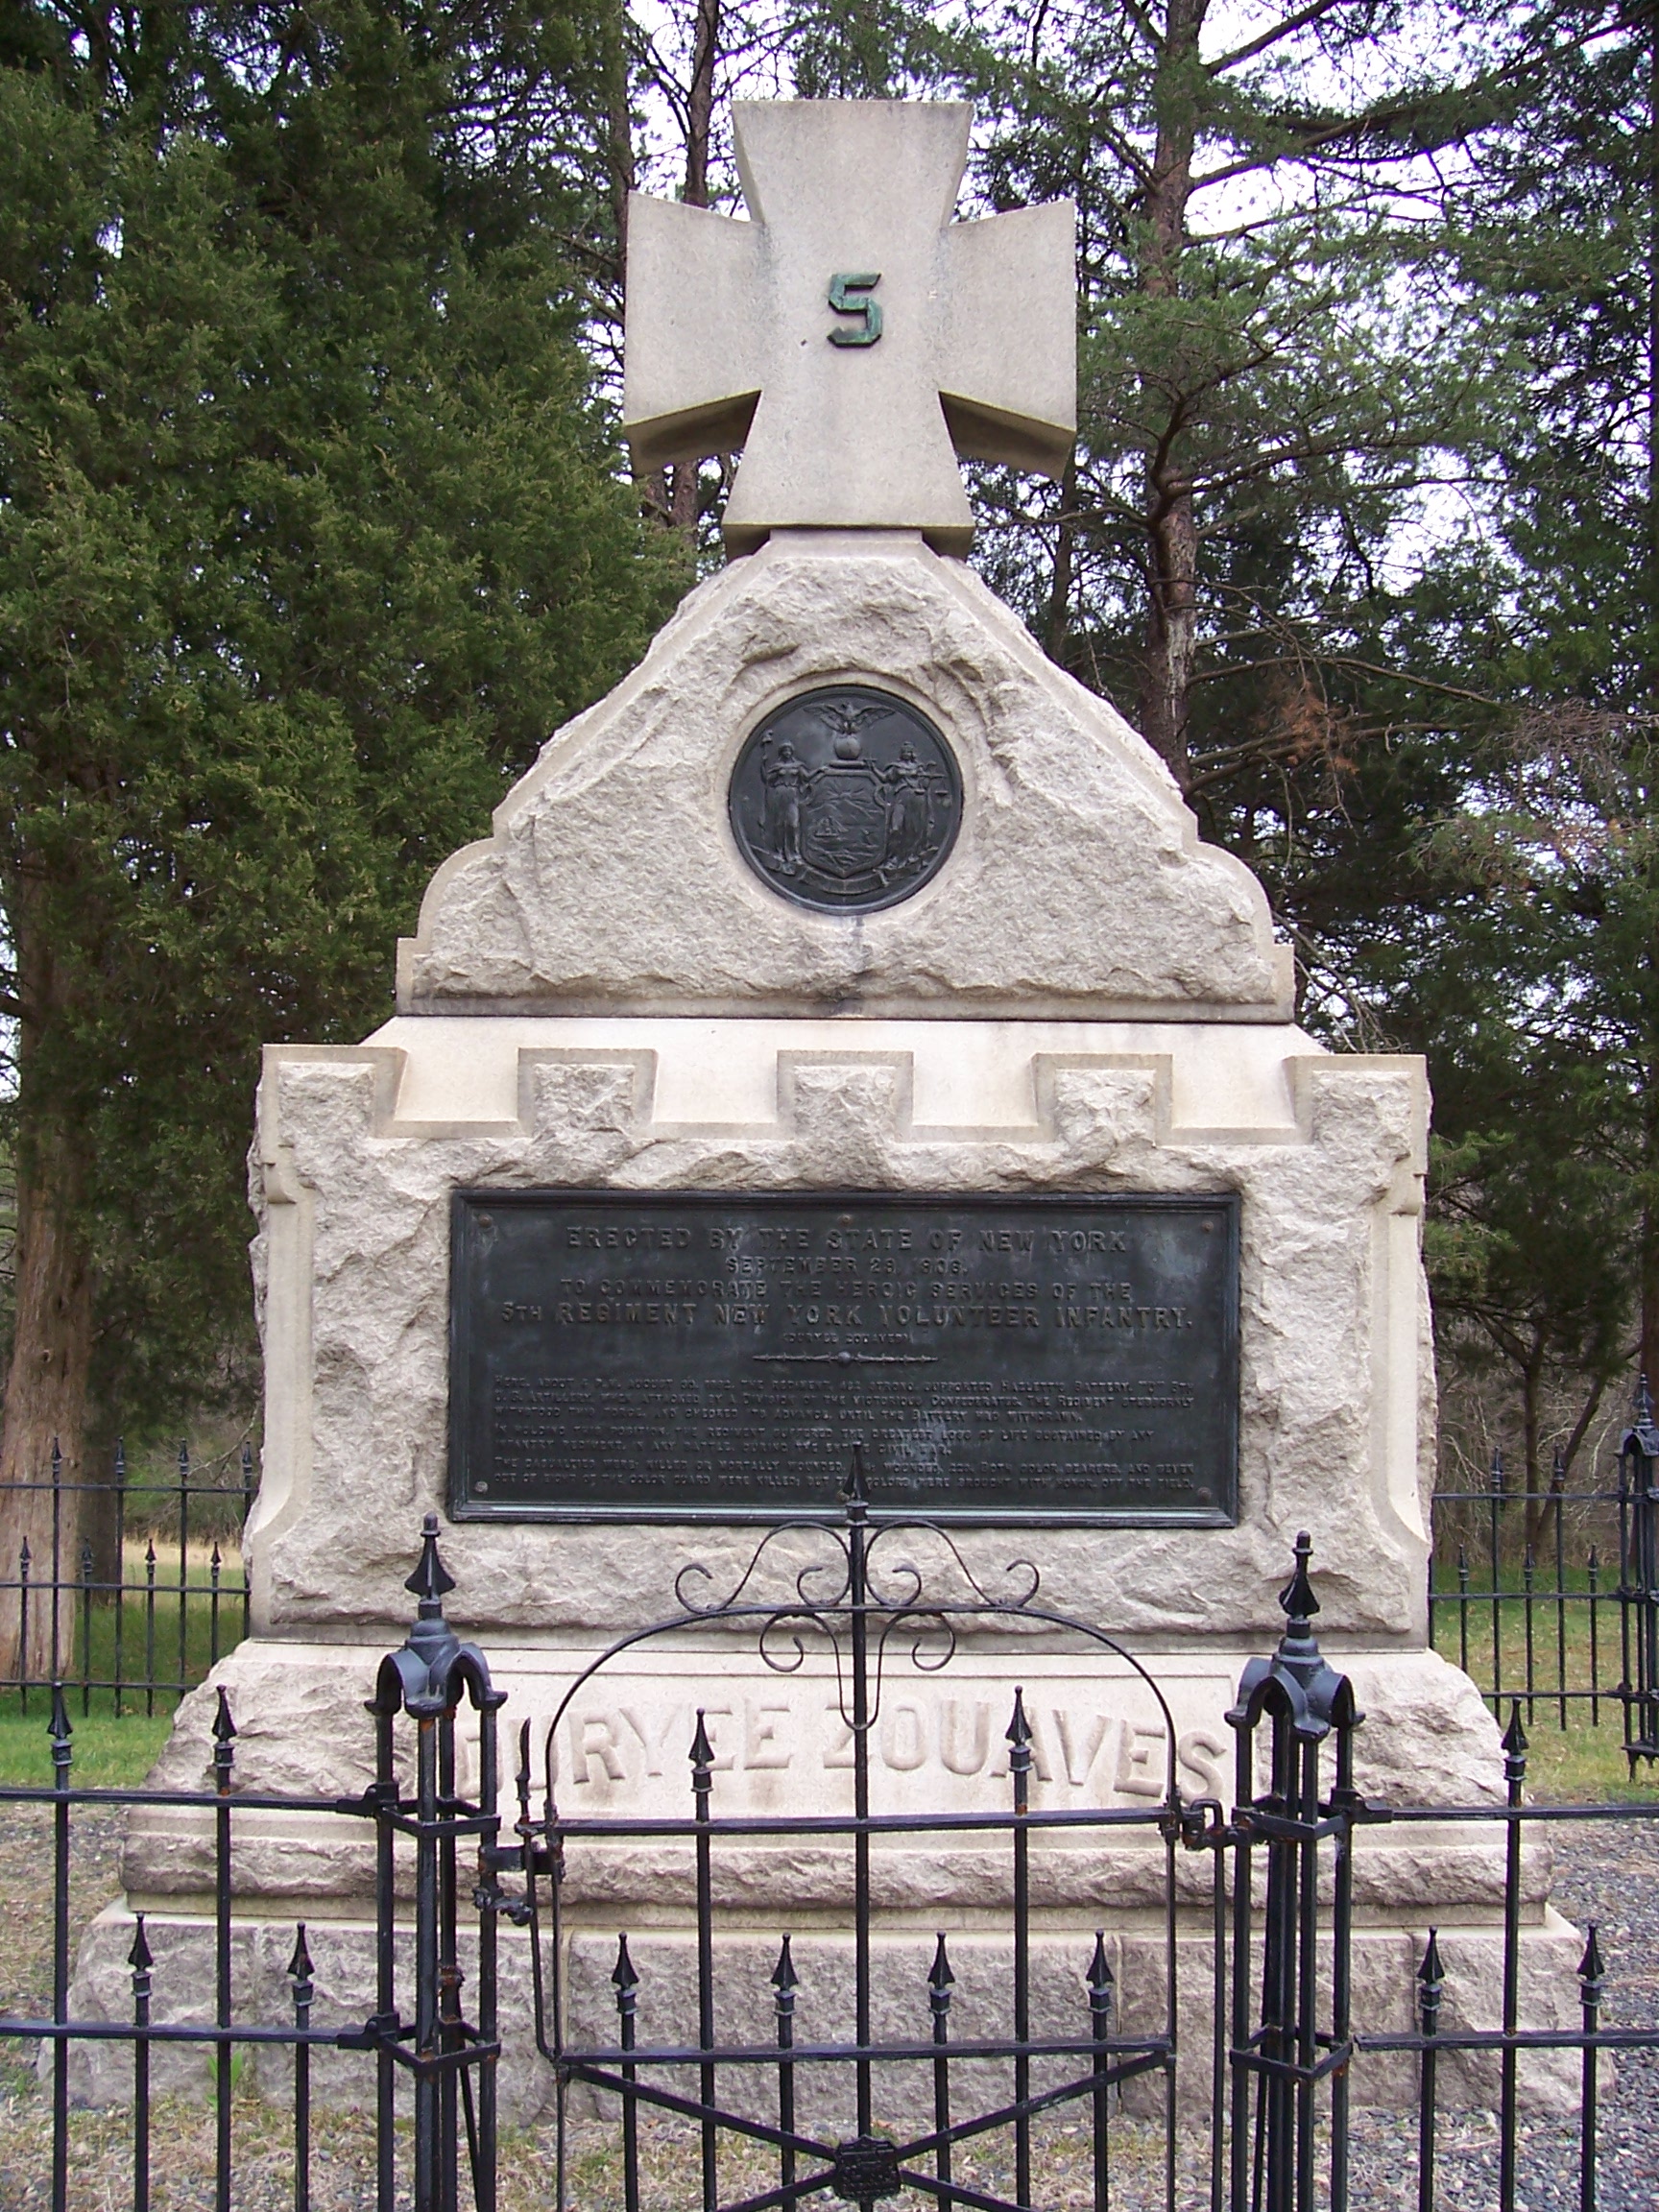 Memorial to the 5th NY regiment Manassas battlefield